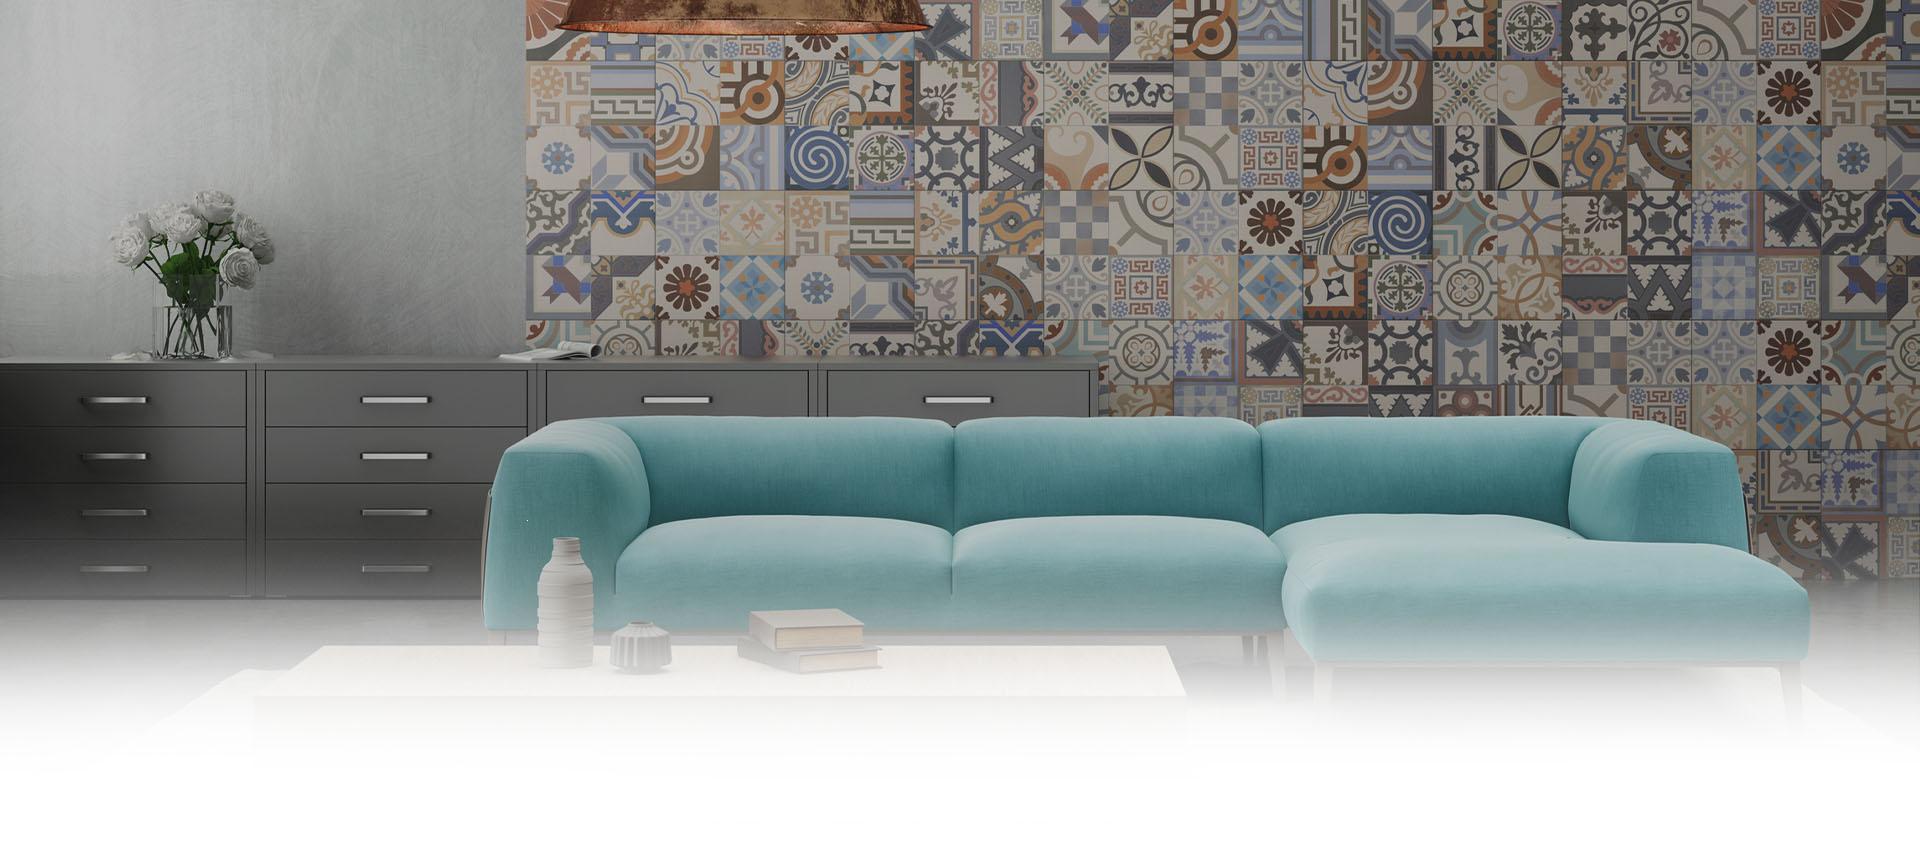 Slajd 2 - Błękitna tapicerowana kanapa w salonie 